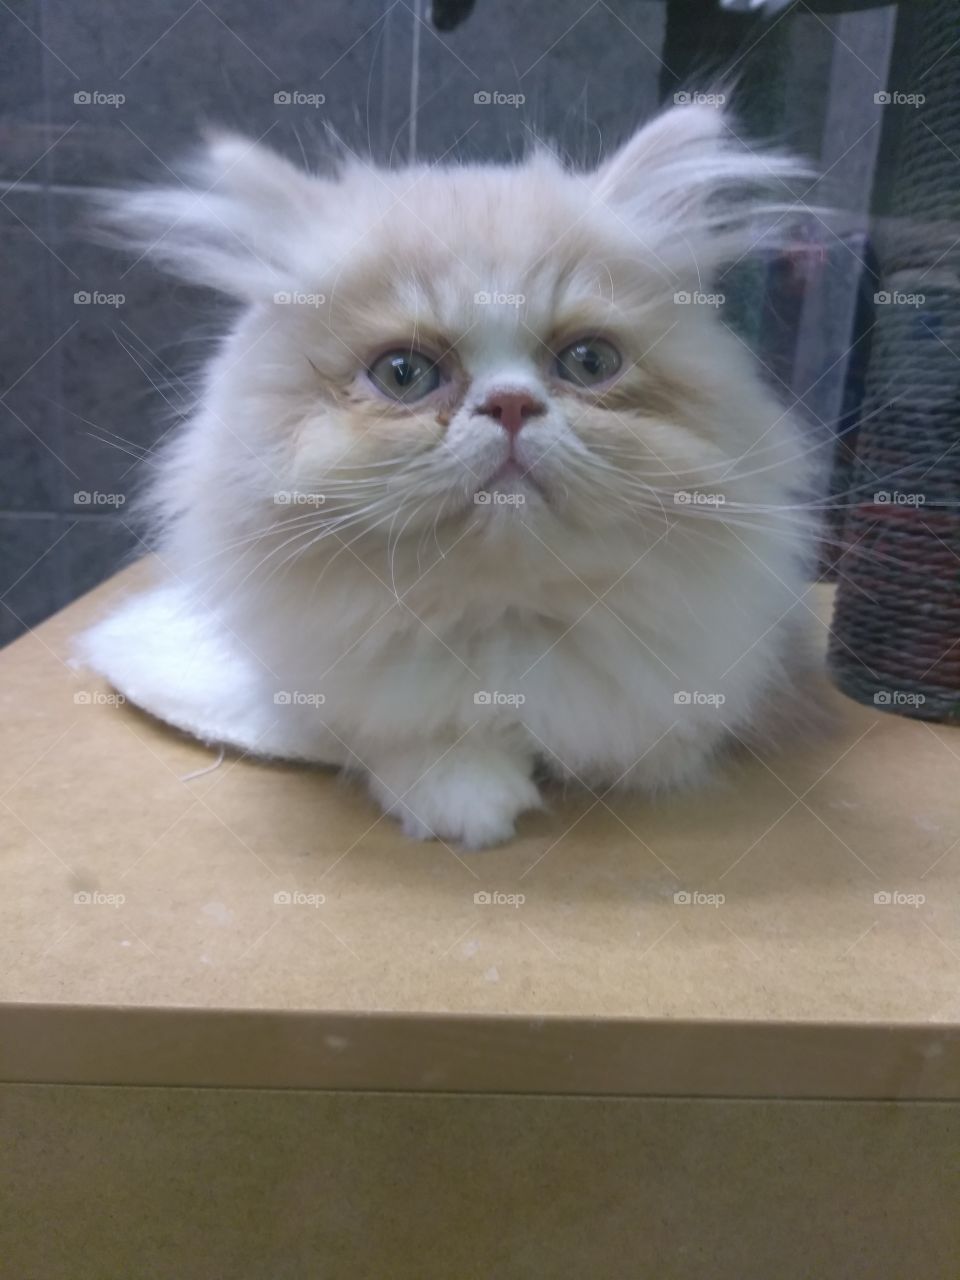 fluffy Flatt faced cat